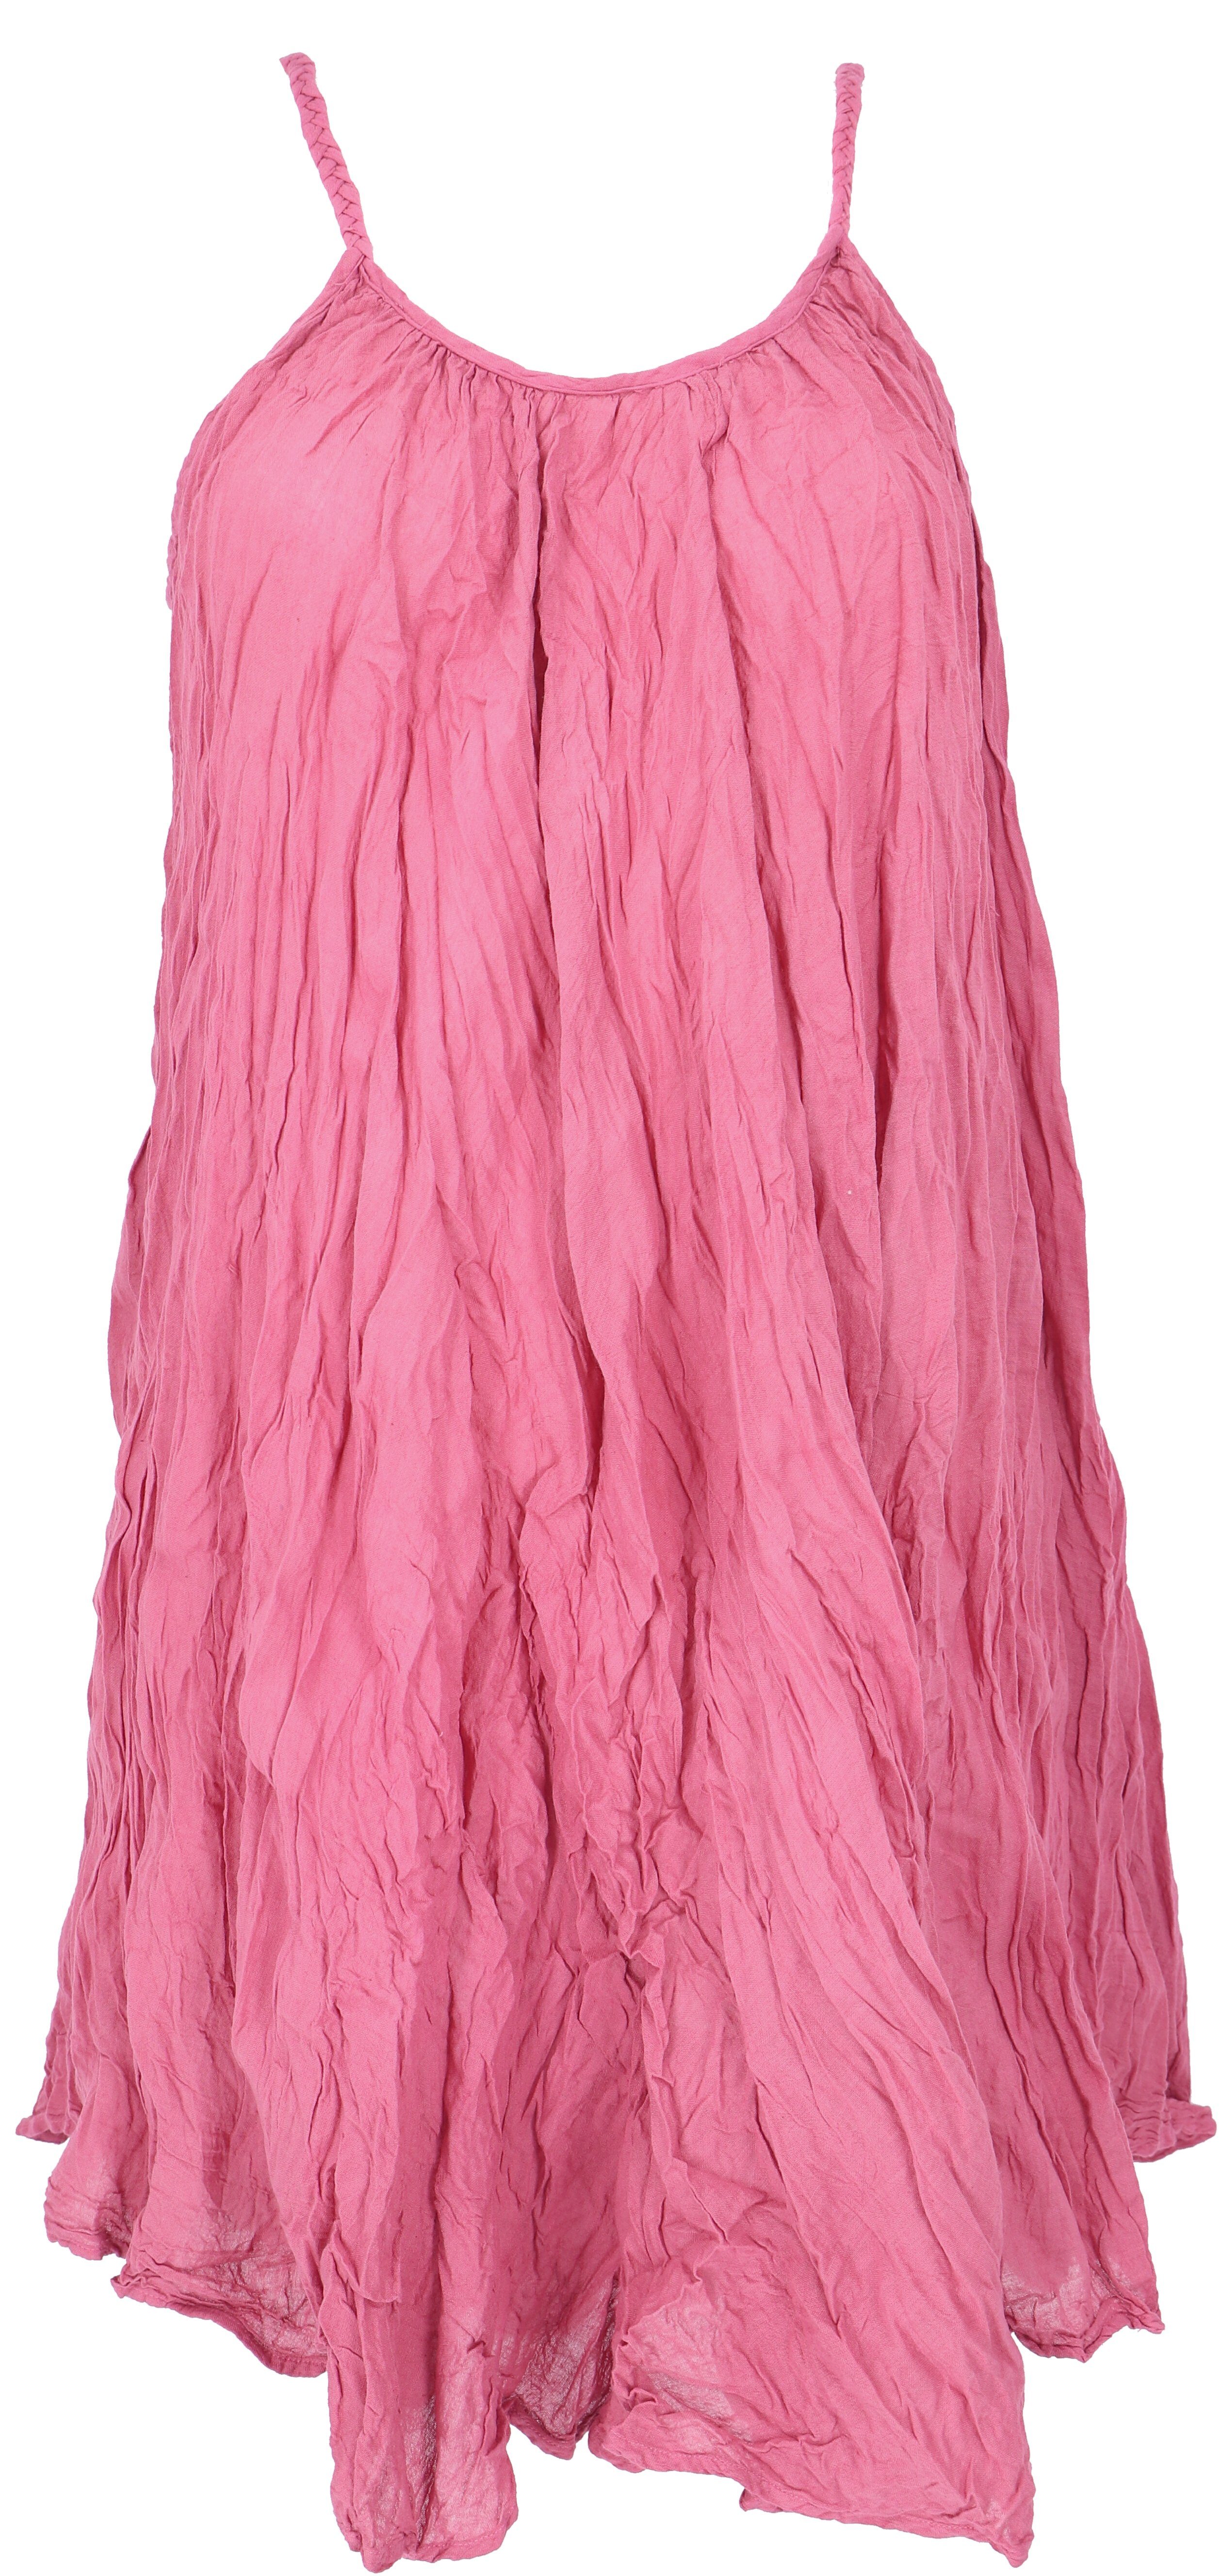 Guru-Shop Midikleid Minikleid, Boho Bekleidung Krinkelkleid, Sommerkleid,.. alternative pink